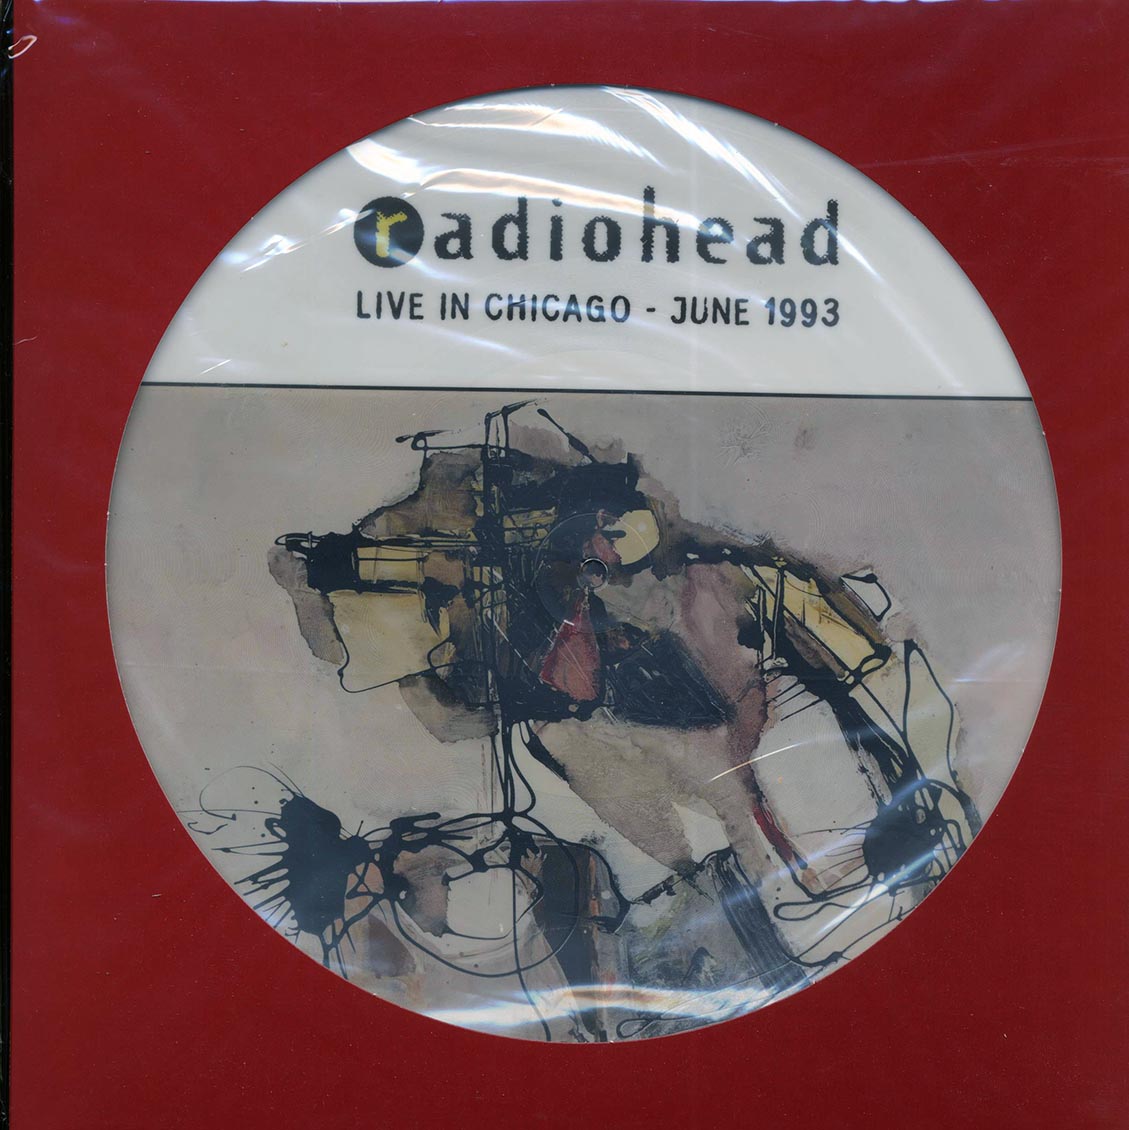 Radiohead - Live In Chicago: Radio Metro June 30th 1993 (ltd. ed.) (picture disc) - Vinyl LP